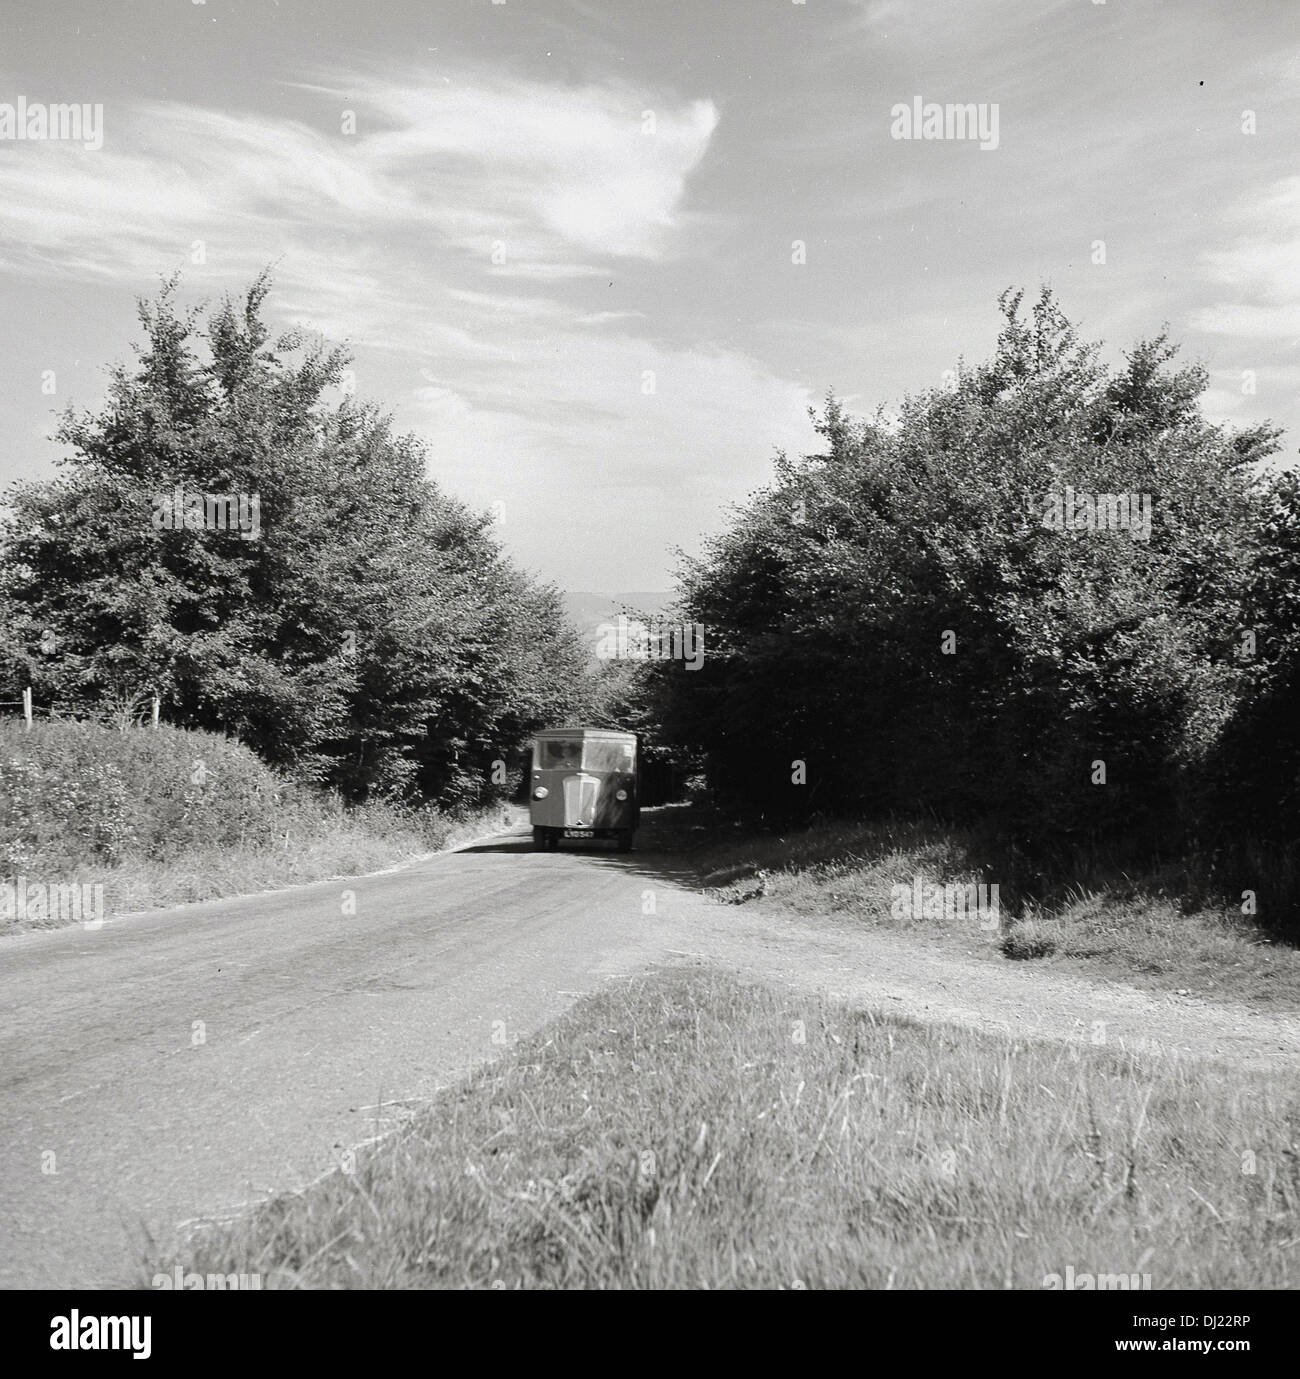 1950er Jahren und ein historisches Bild von van aus den Bäumen auf einer kleinen, leeren Landschaft Straße ohne Markierungen. Stockfoto